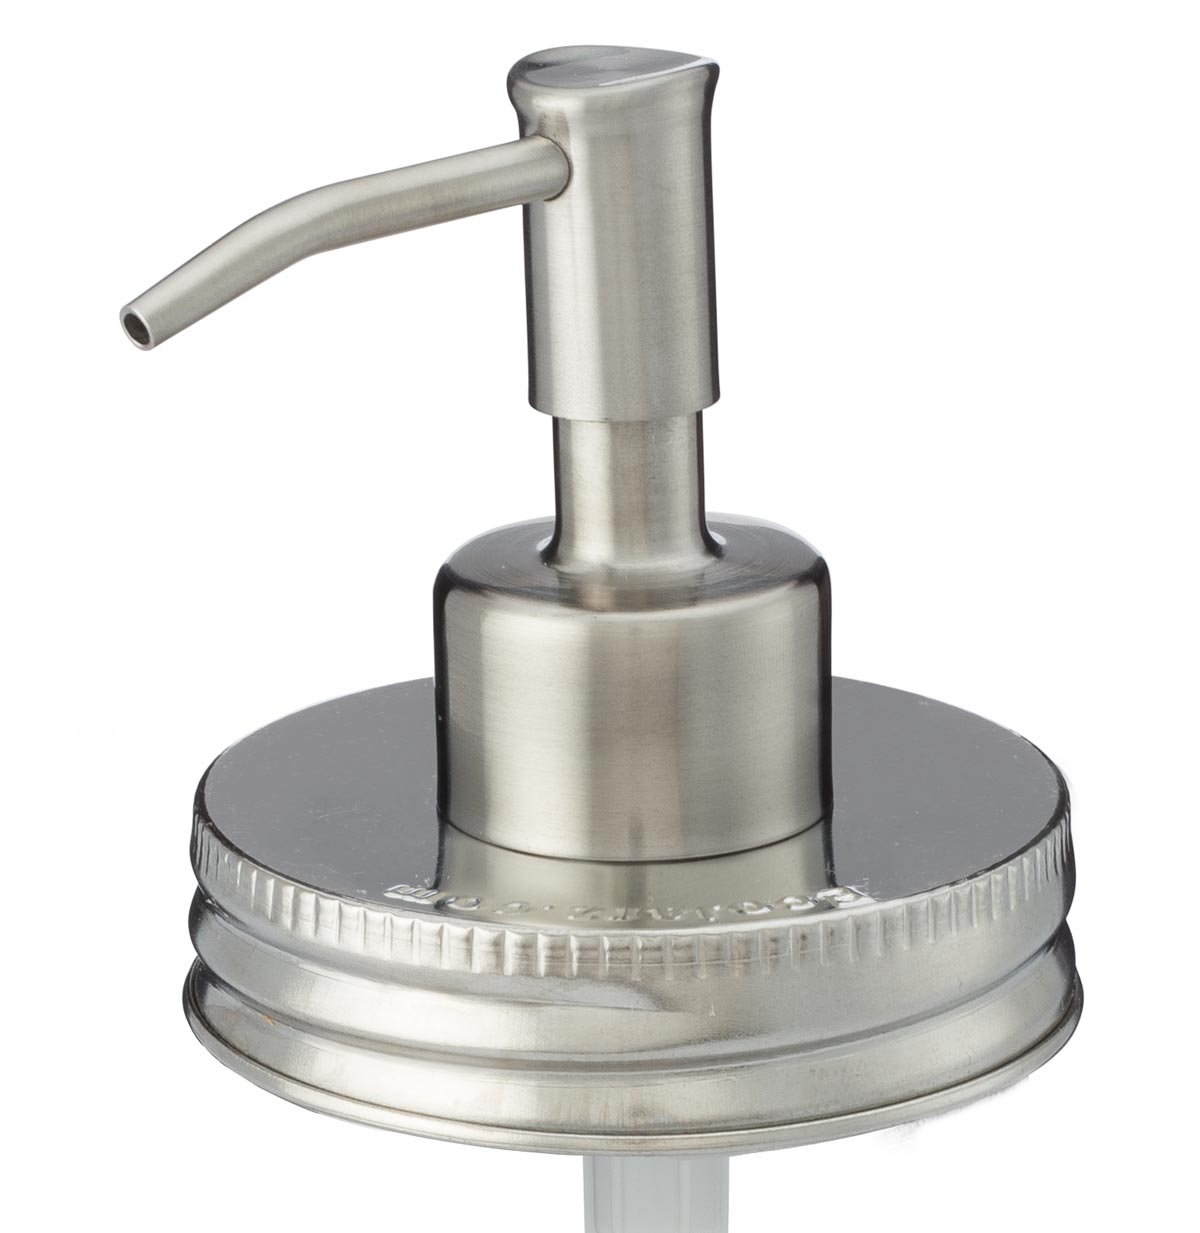 Stainless steel mason jar soap dispenser - slight downward angle